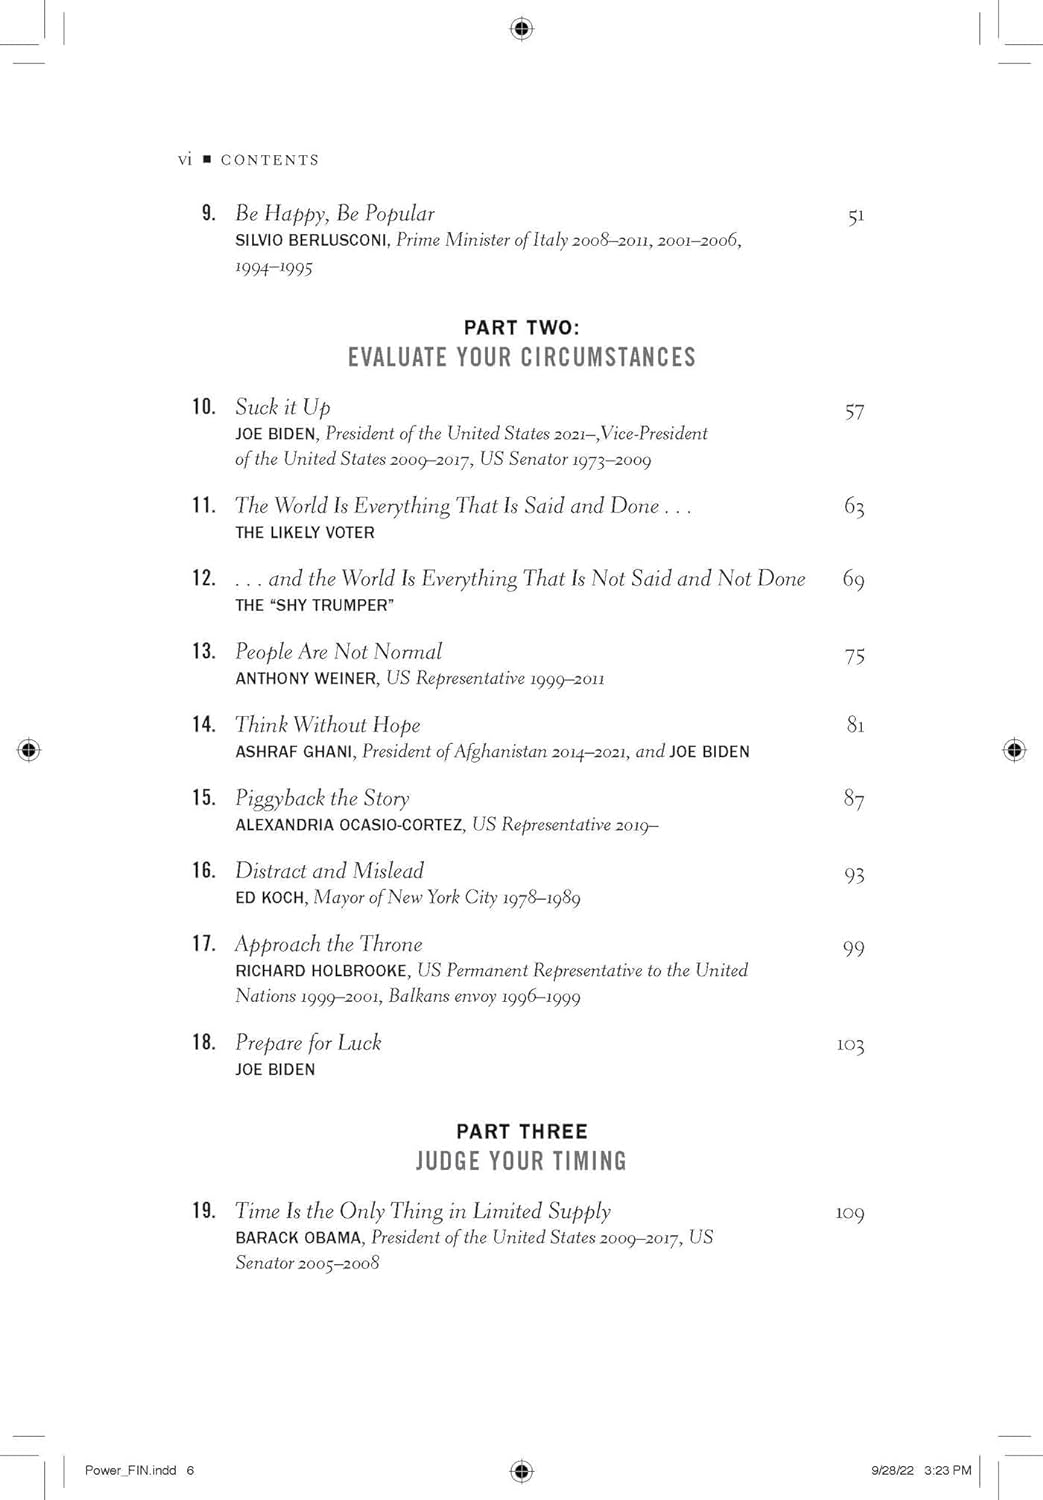 Sách Ngoại Văn - Power: The 50 Truths - The Definitive Inside's Guide by Douglas E. Schoen (Author)